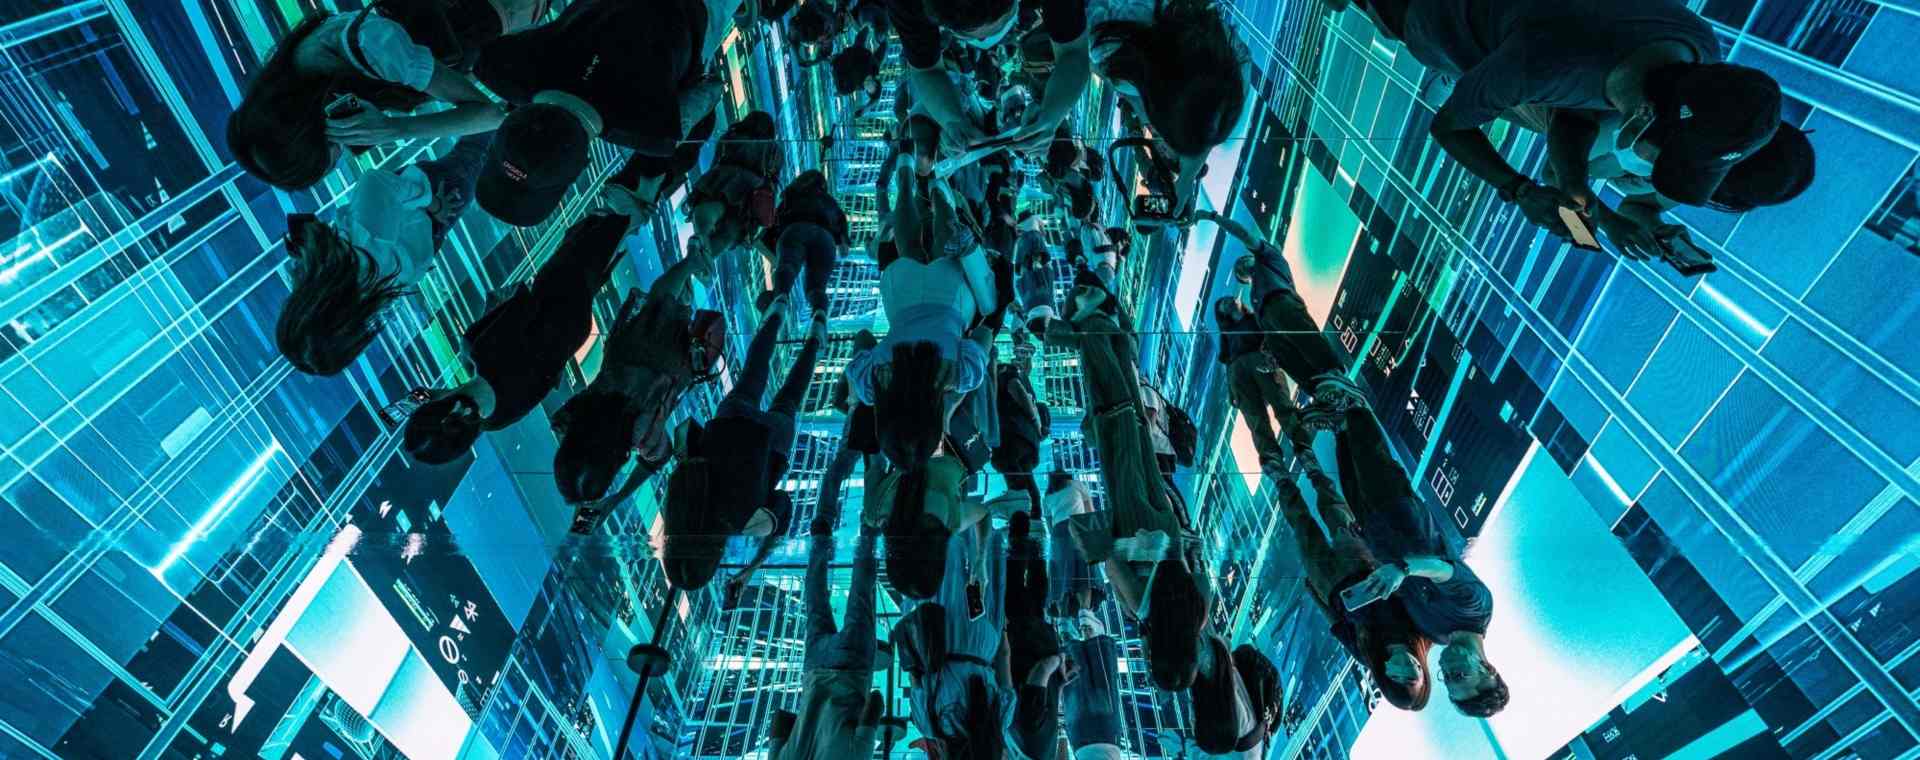 Refleksi pengunjung yang melihat instalasi seni imersif berjudul Machine Hallucinations - Space: Metaverse oleh Refik Anadol di Digital Art Fair Asia yang menampilkan seni digital dan NFT di Hong Kong./Bloomberg-Lam Yik